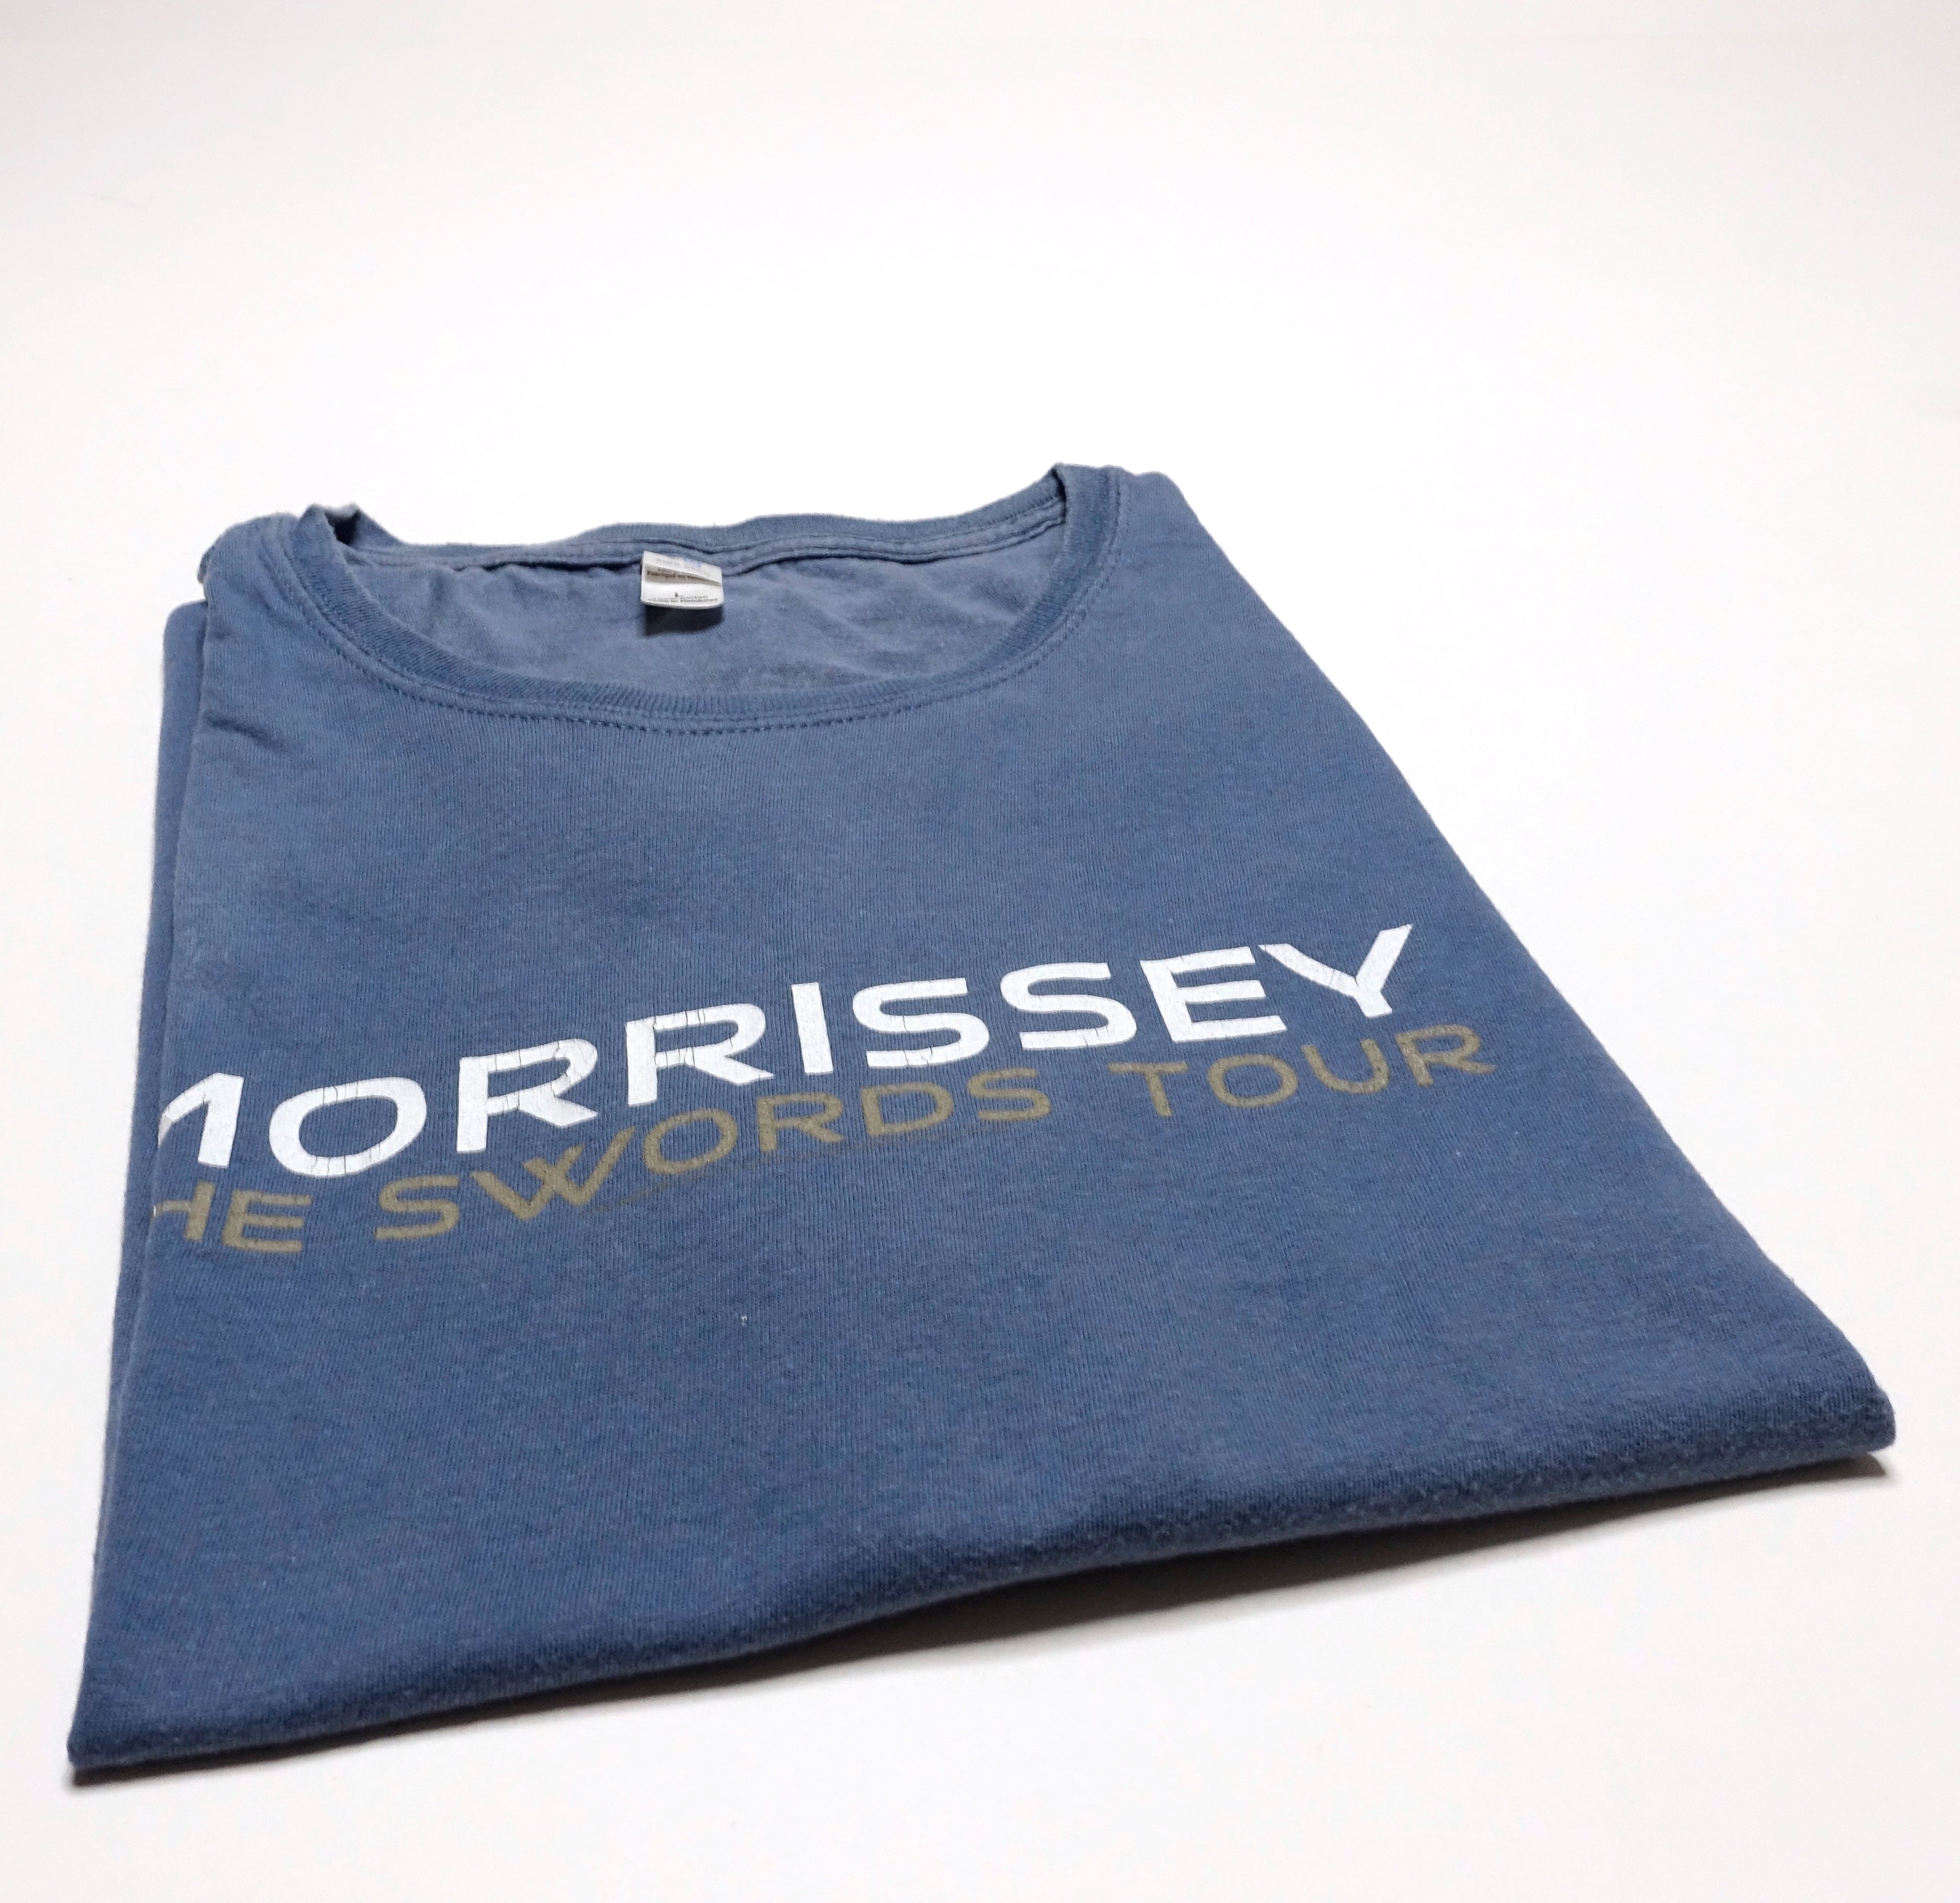 Morrissey - Swords UK / EU 2009 Tour Shirt Size Large